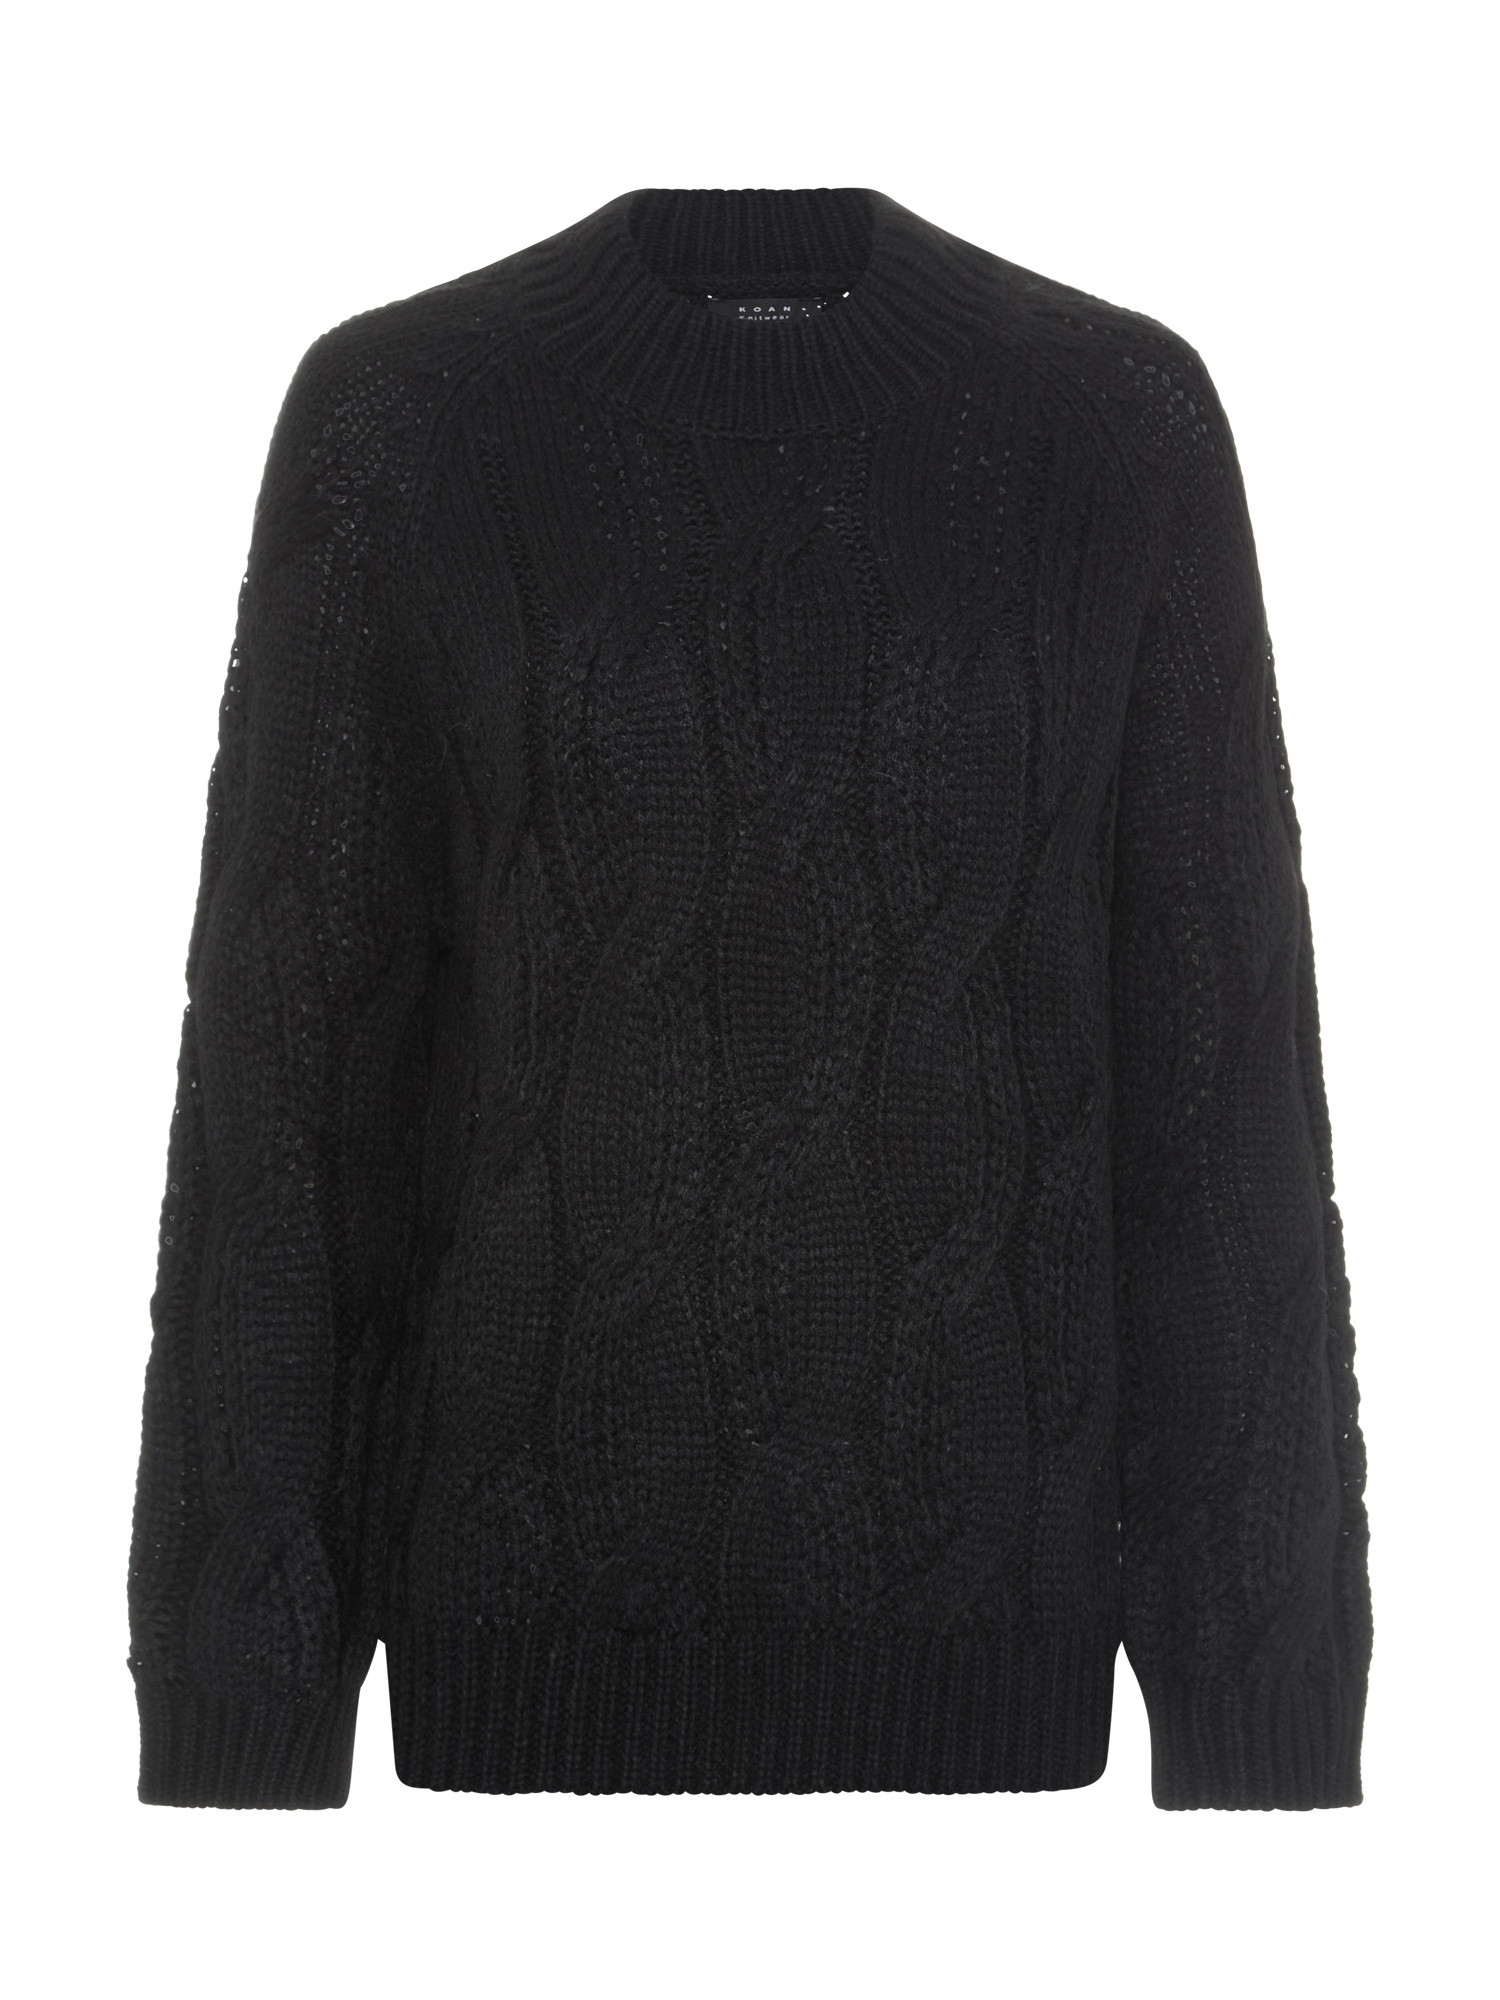 Koan Collection свитер с круглым вырезом и косой, черный мужской свитер с круглым вырезом длинным рукавом флисовой подкладкой и манжетами в рубчик зимний плотный теплый свитер с узором в клетку